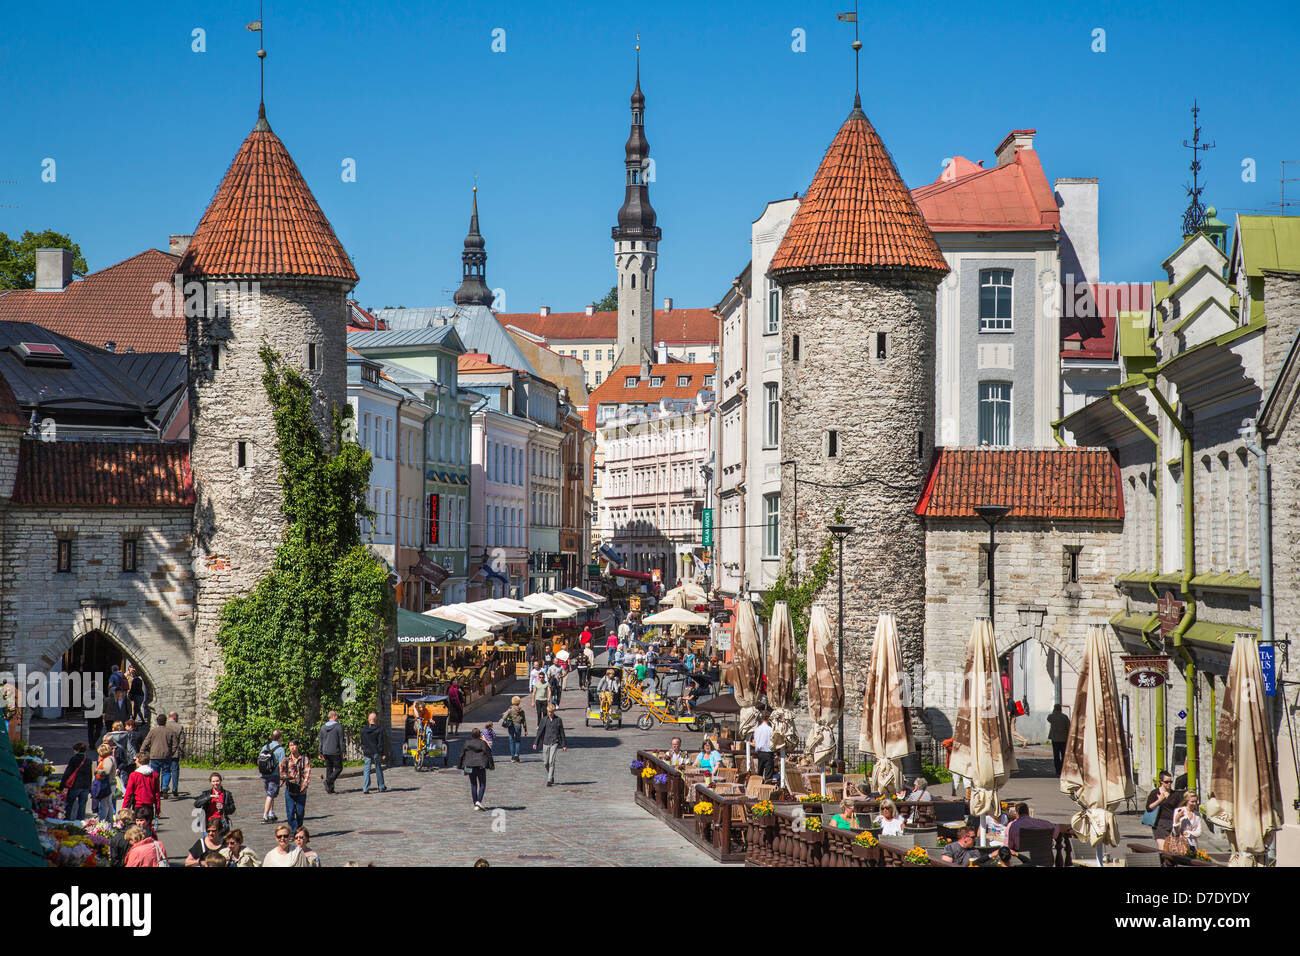 La vieille ville de Tallinn, Estonie, la rue Viru et tours de la ville médiévale de la Porte Viru Banque D'Images